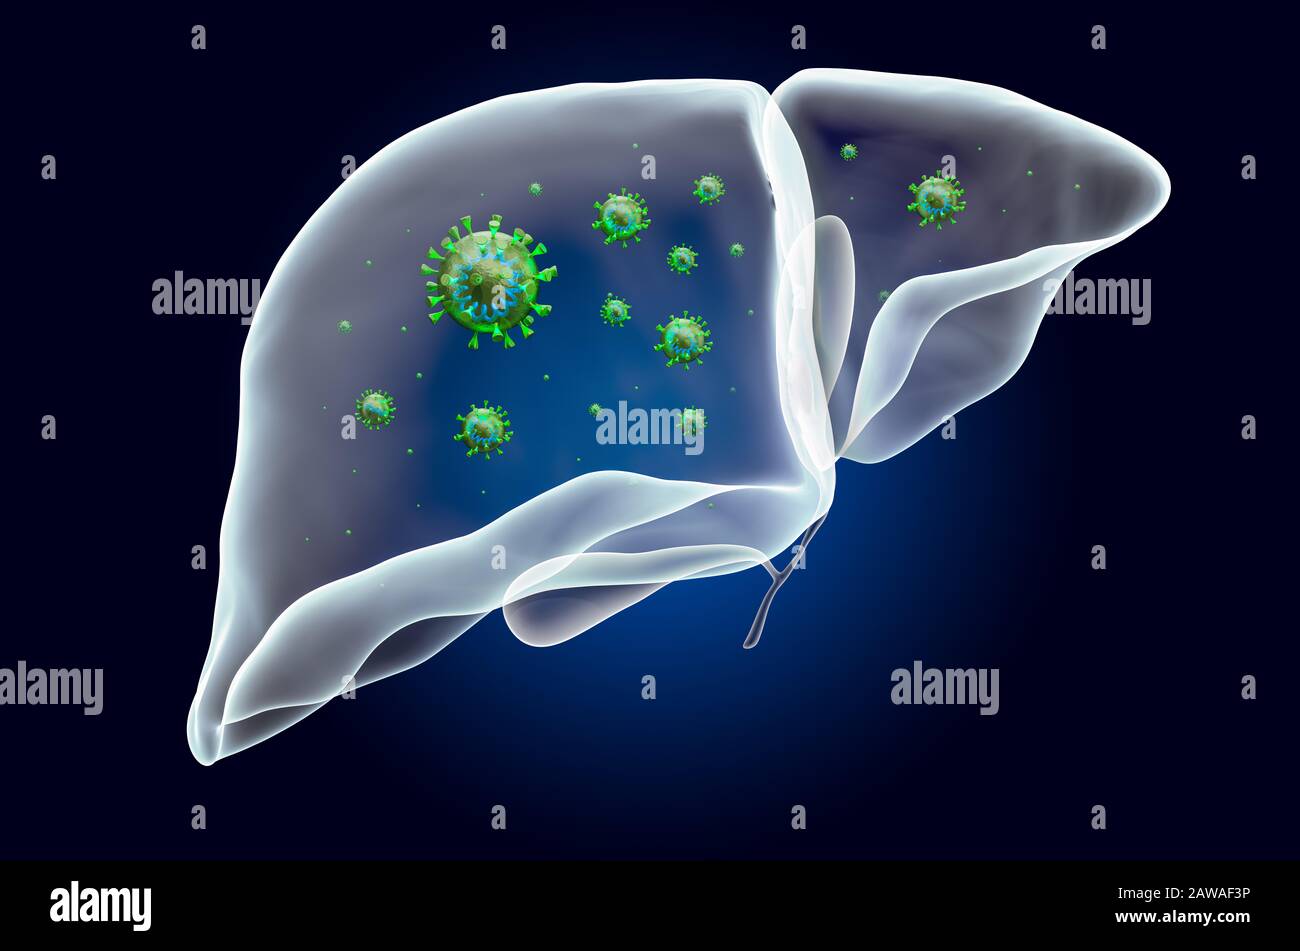 Fegato e cistifellea con virus, effetto di luce fantasma, ologramma a raggi X. Rendering 3D su sfondo blu scuro Foto Stock